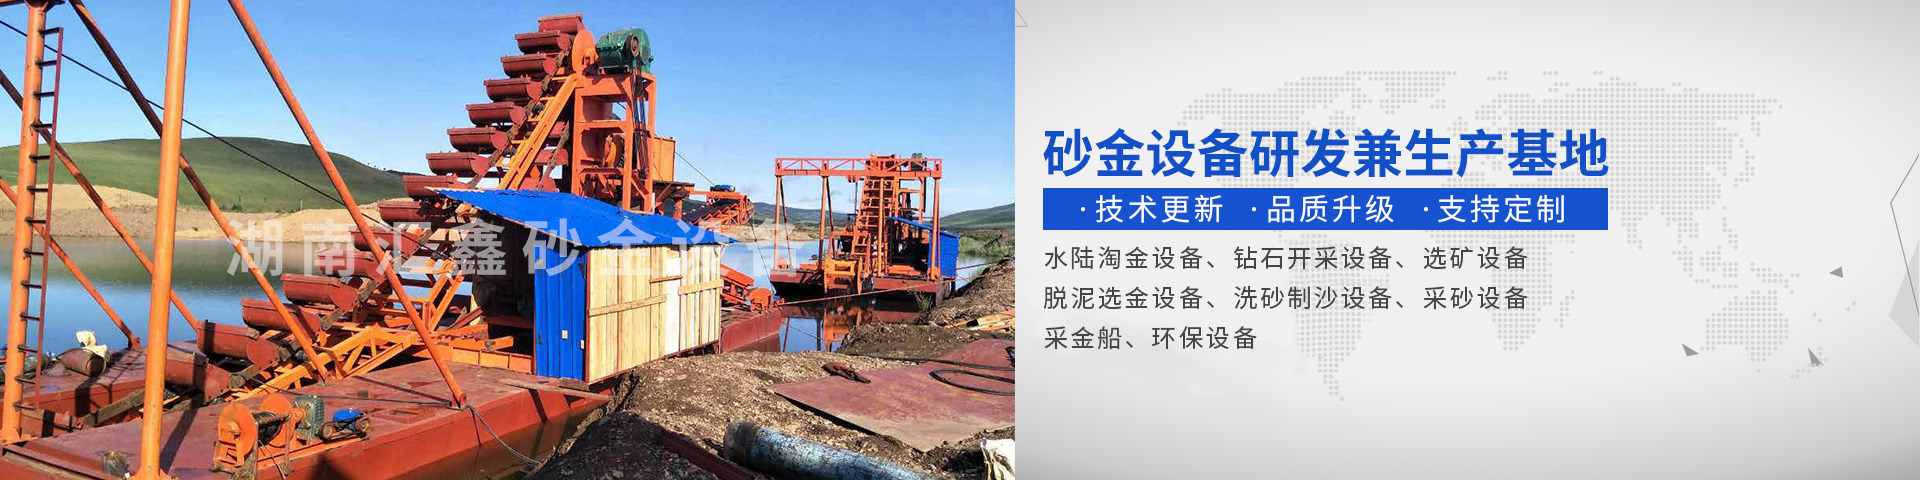 瀏陽匯鑫工貿有限公司——淘金設備廠家|沙金設備定制|淘金船設備|鉆石開采設備